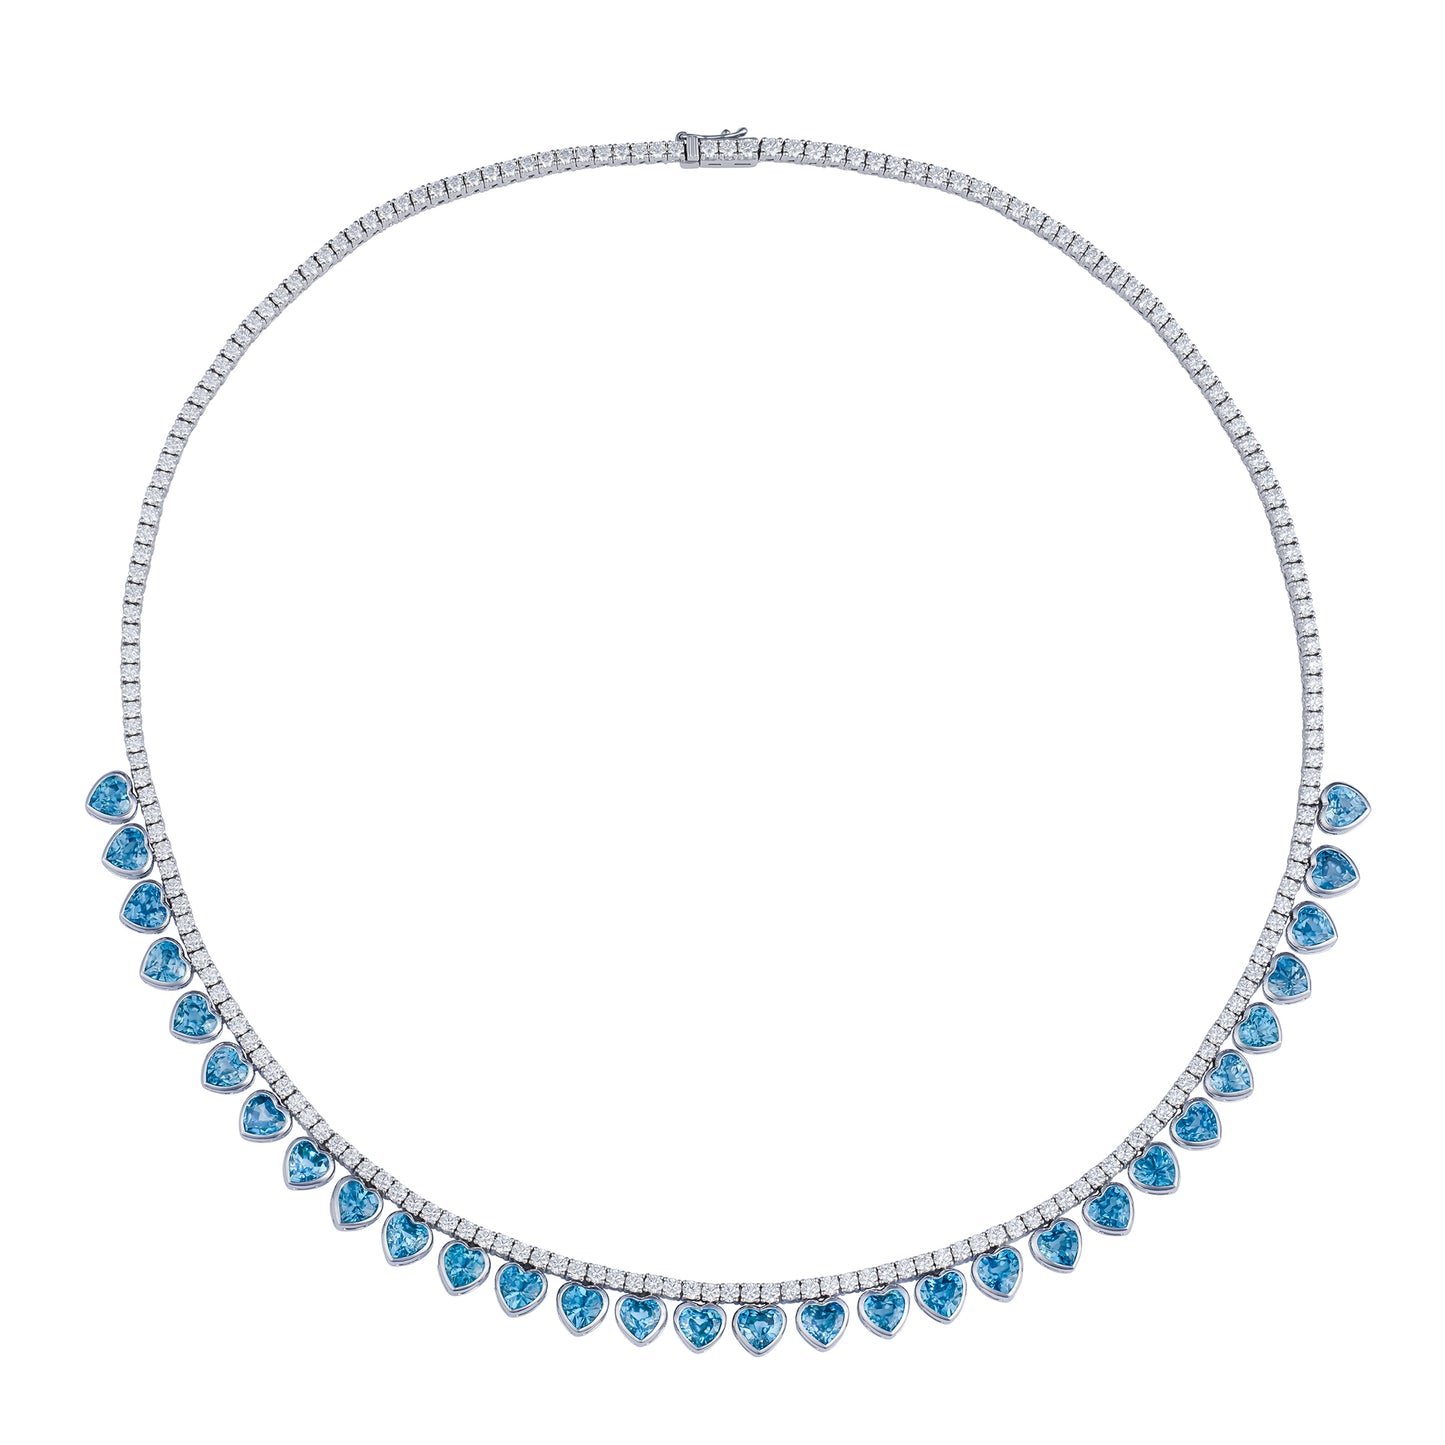 Emily P Wheeler Bride Necklace - Blue Zircon and Diamond